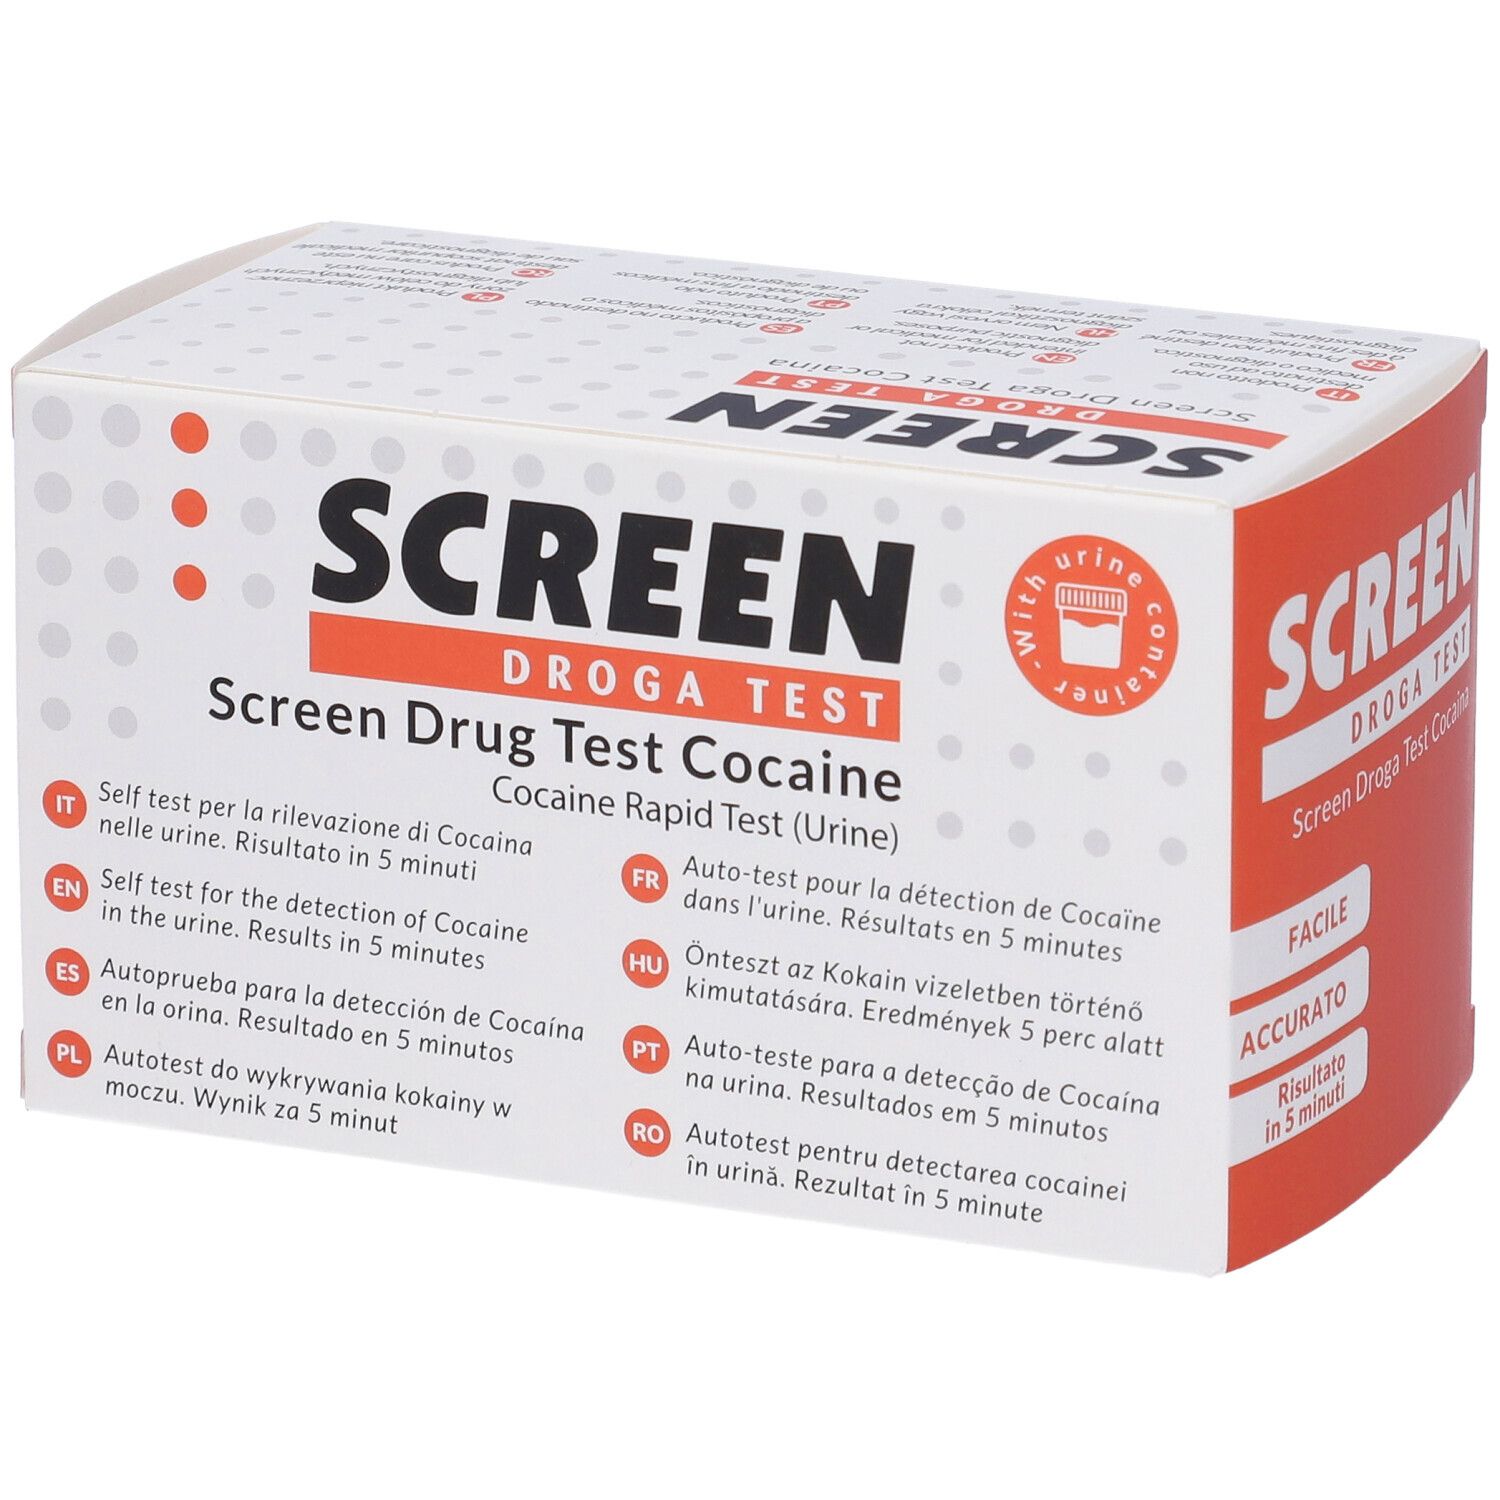 Test Cocaína